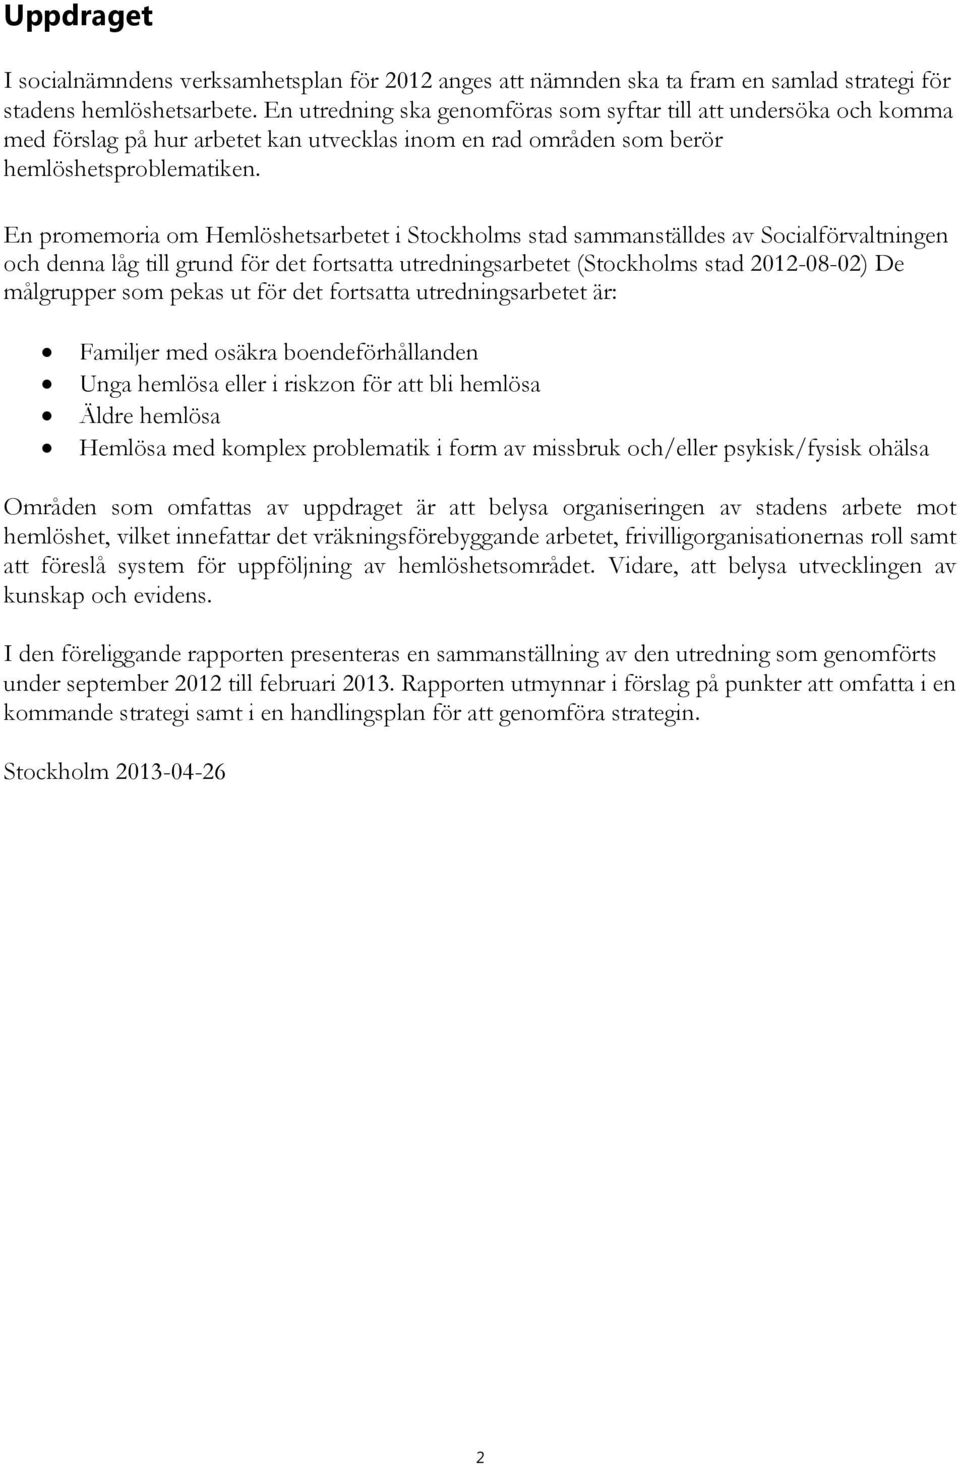 En promemoria om Hemlöshetsarbetet i Stockholms stad sammanställdes av Socialförvaltningen och denna låg till grund för det fortsatta utredningsarbetet (Stockholms stad 2012-08-02) De målgrupper som